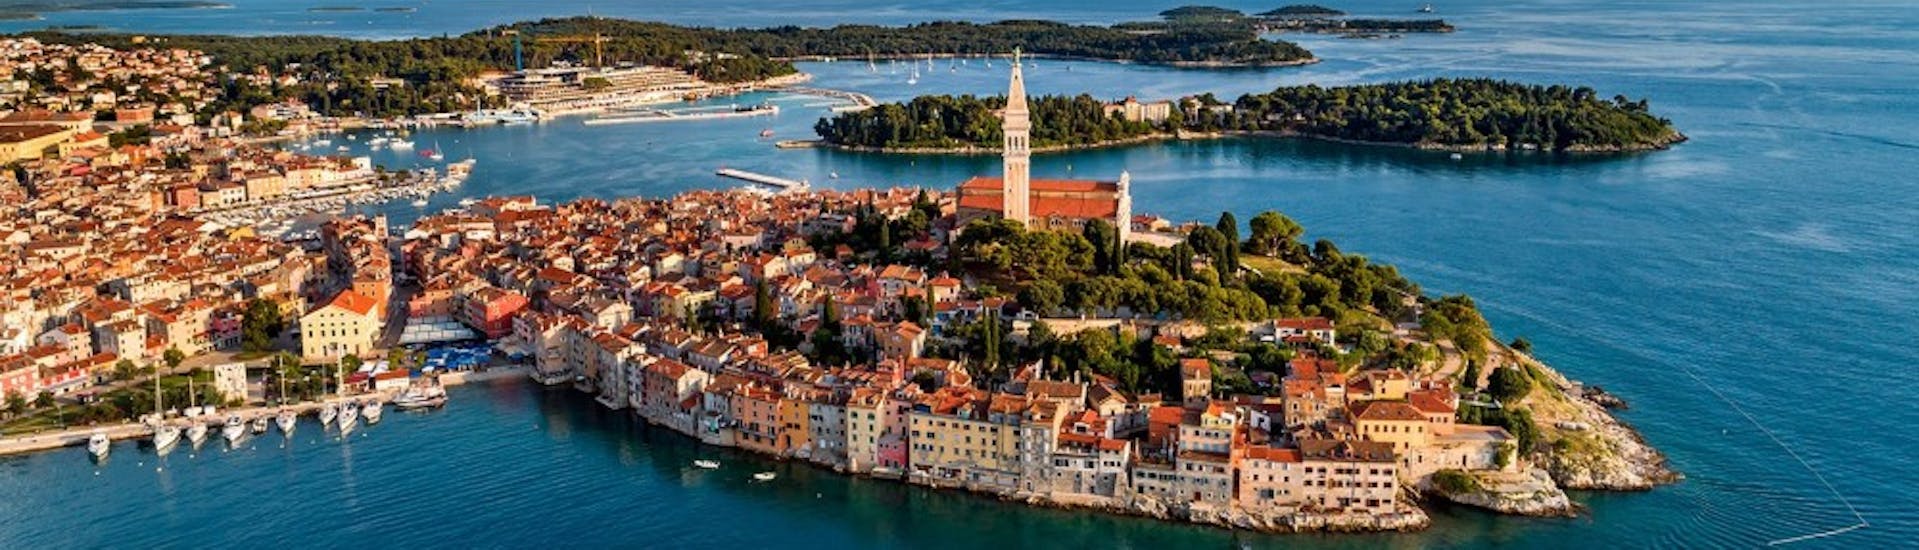 Vista de la histórica ciudad de Rovinj, que vas a visitar durante el paseo en barco privado a Rovinj desde Fažana con Sea Tours Istria Fažana.